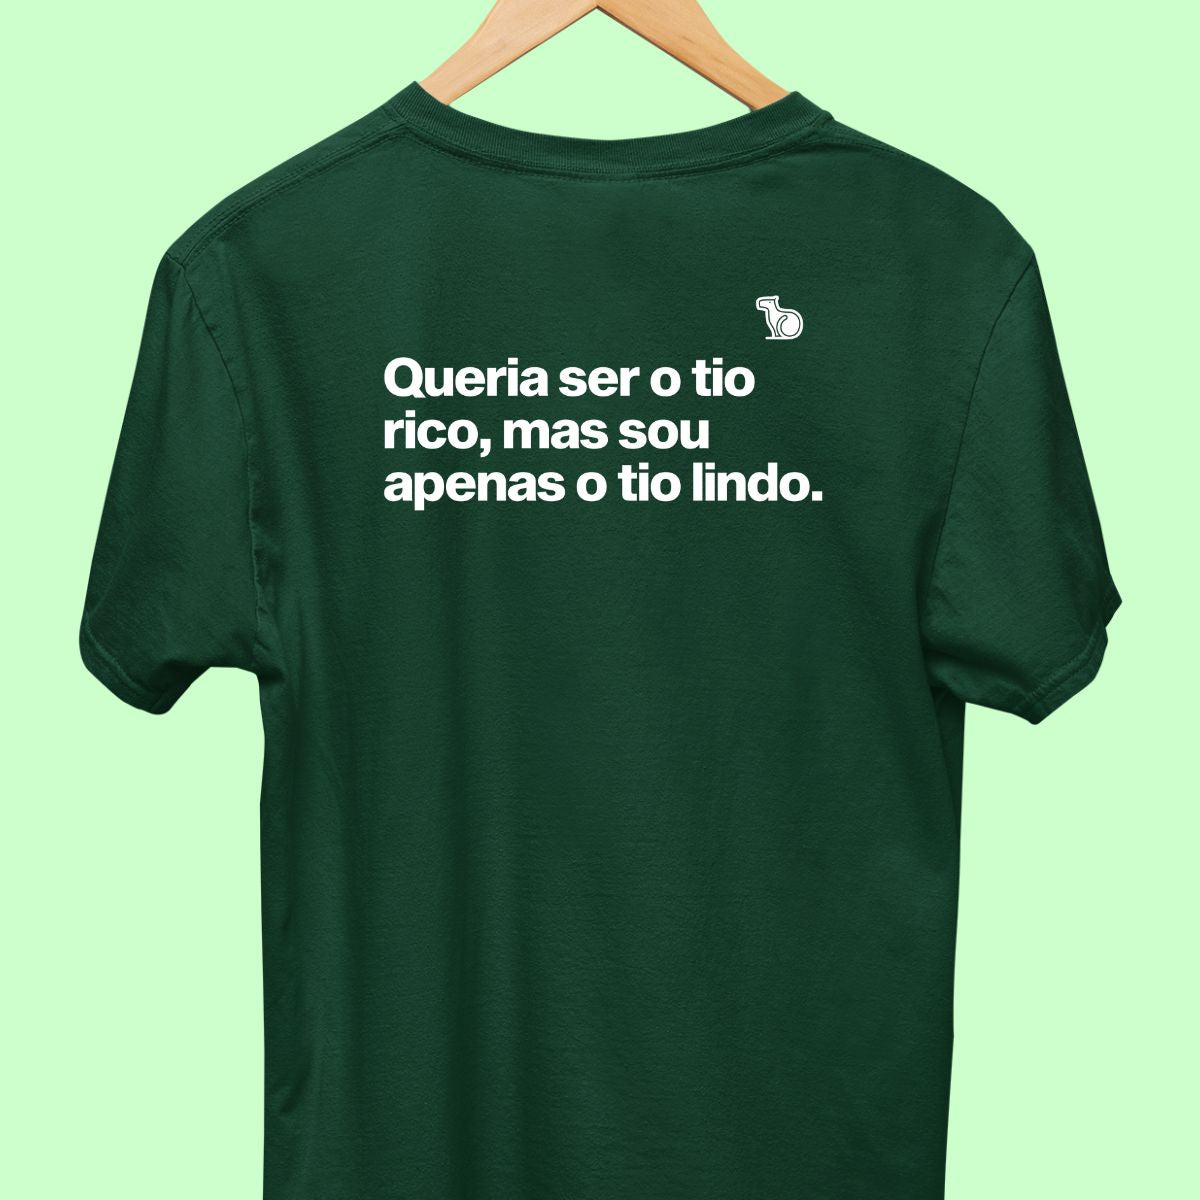 Camiseta com a frase "Queria ser o tio rico, mas sou apenas o tio lindo." masculina verde.